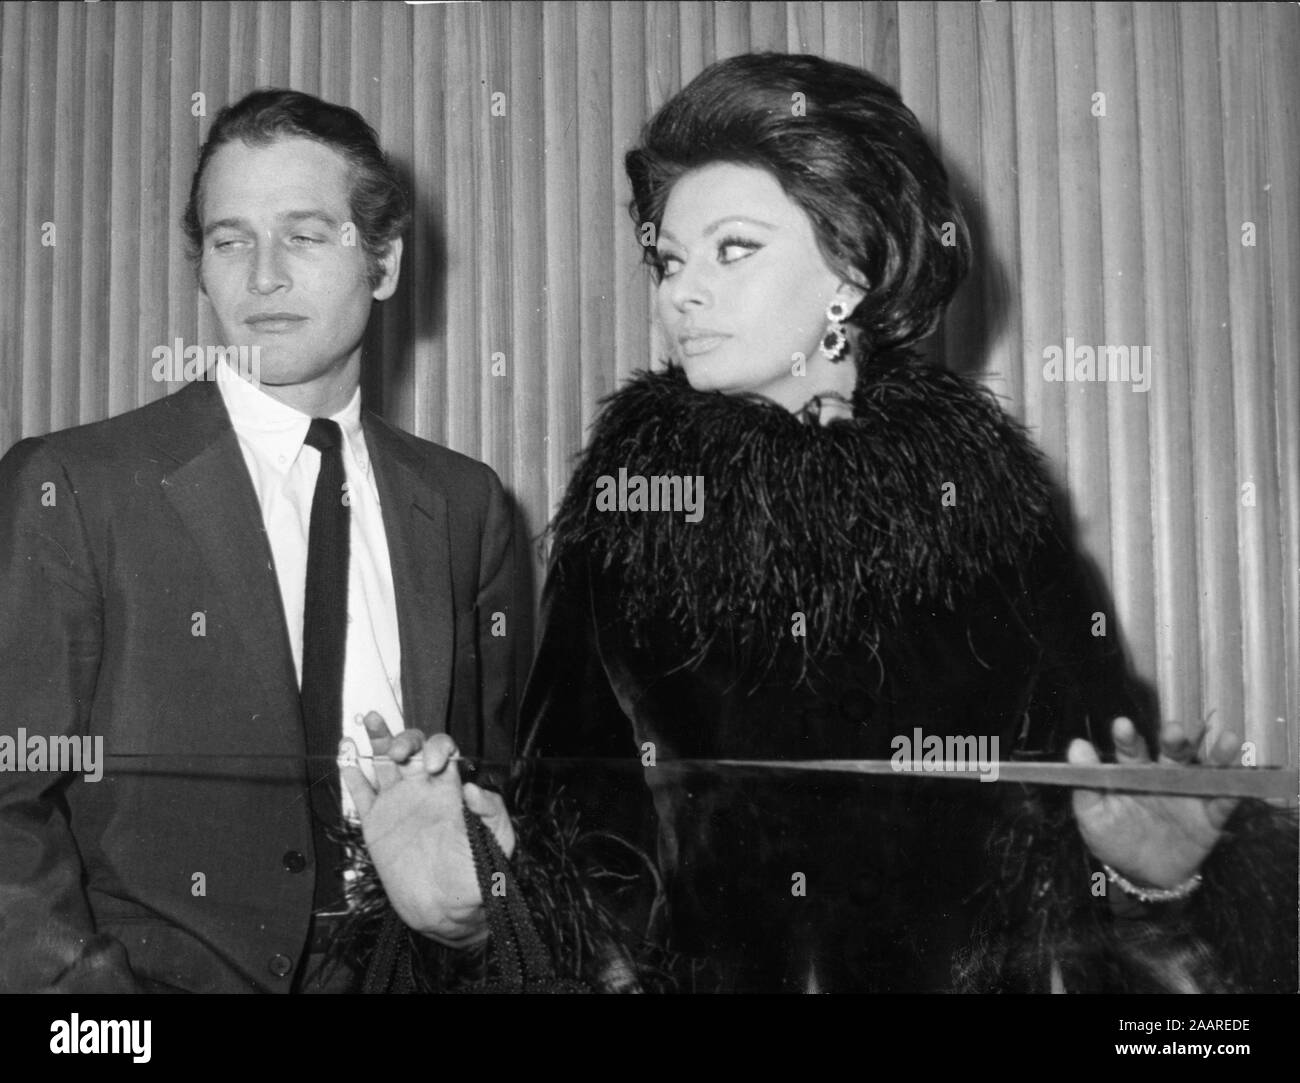 Anni sessanta - Attore PAUL LEONARD NEWMAN, sinistra, con l'attrice Sophia Loren. (Credito Immagine: © Keystone Press Agency/Keystone USA via ZUMAPRESS.com) Foto Stock